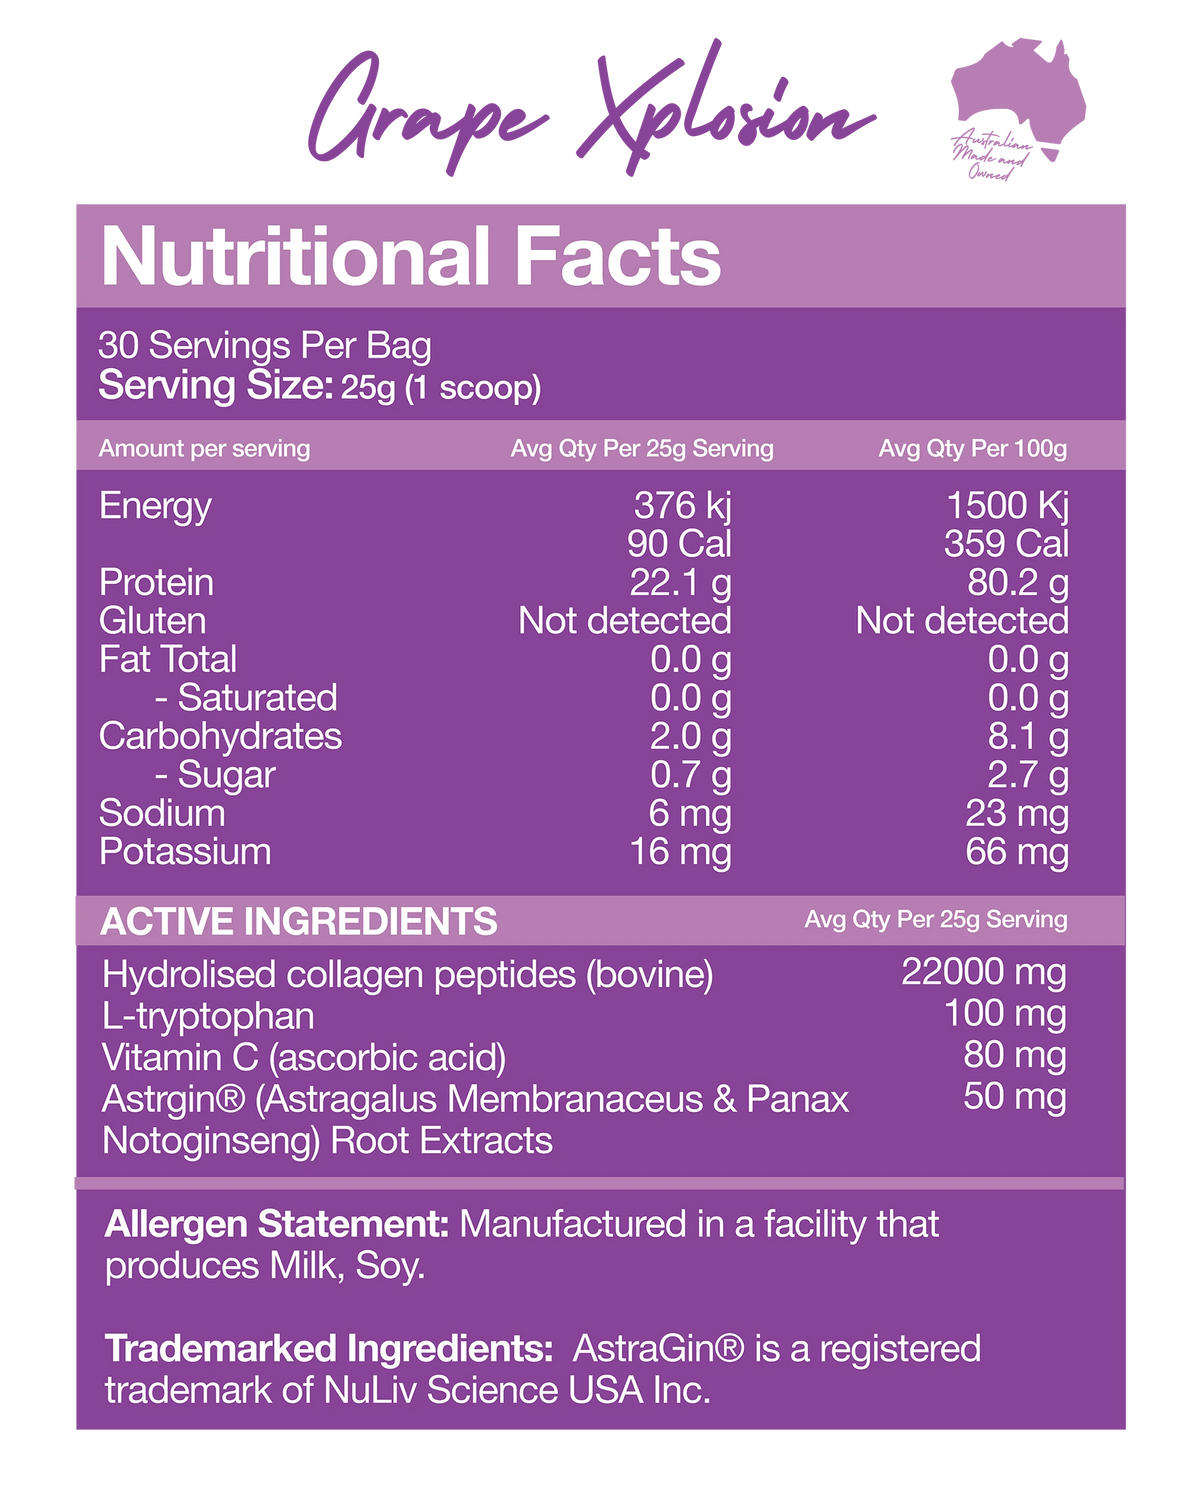 Nexus Sports Nutrition Super Protein Water